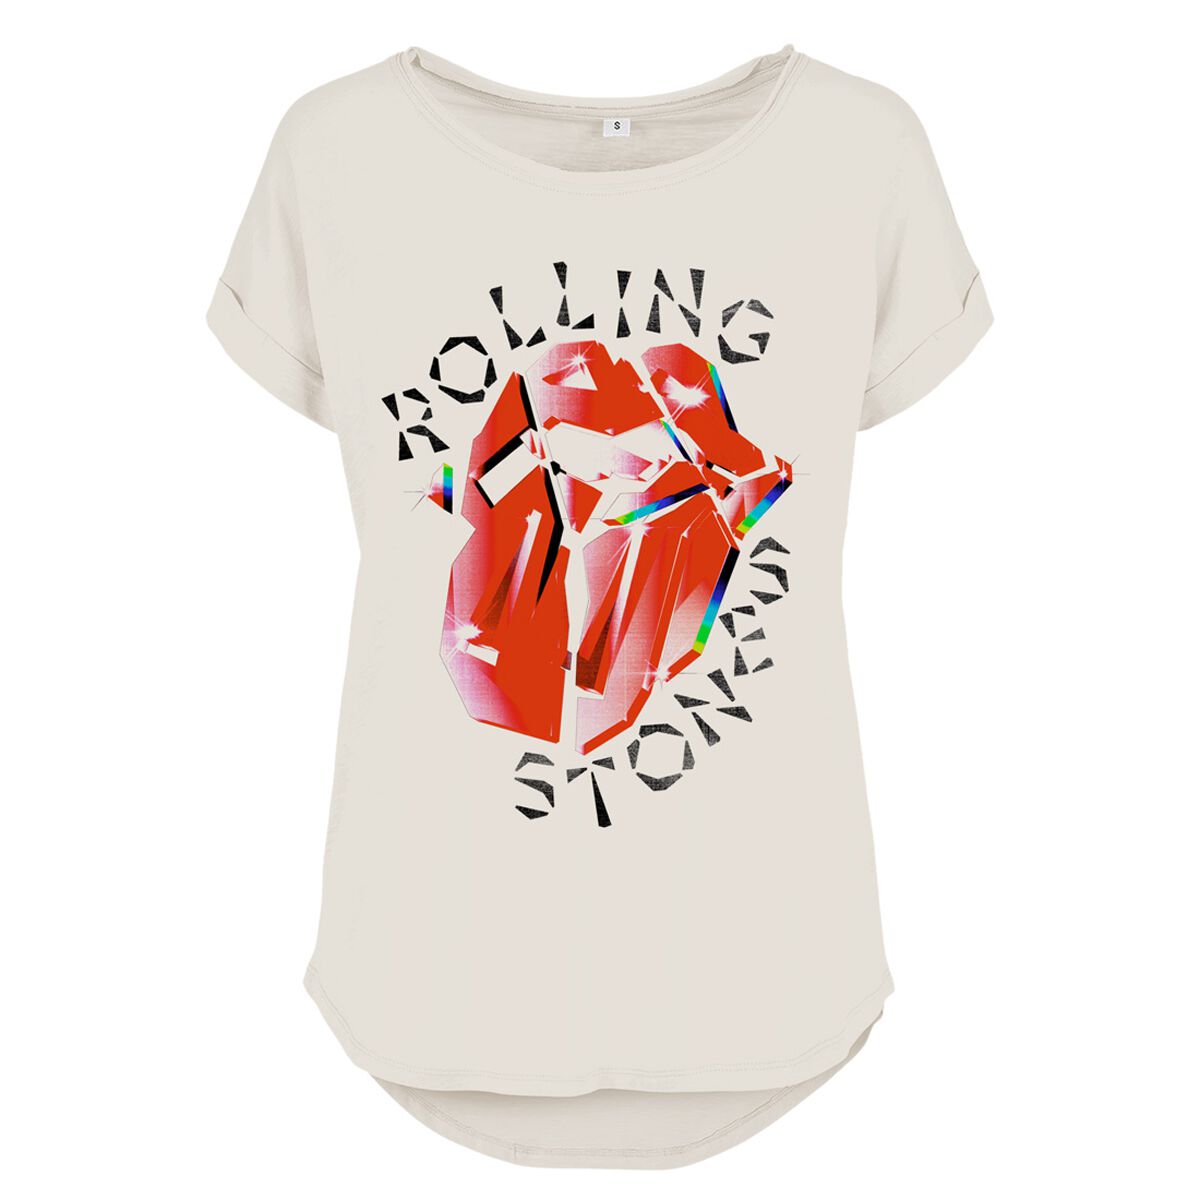 The Rolling Stones T-Shirt - Hackney Diamonds Prism Tongue - S bis 4XL - für Damen - Größe XXL - weiß  - Lizenziertes Merchandise! von The Rolling Stones